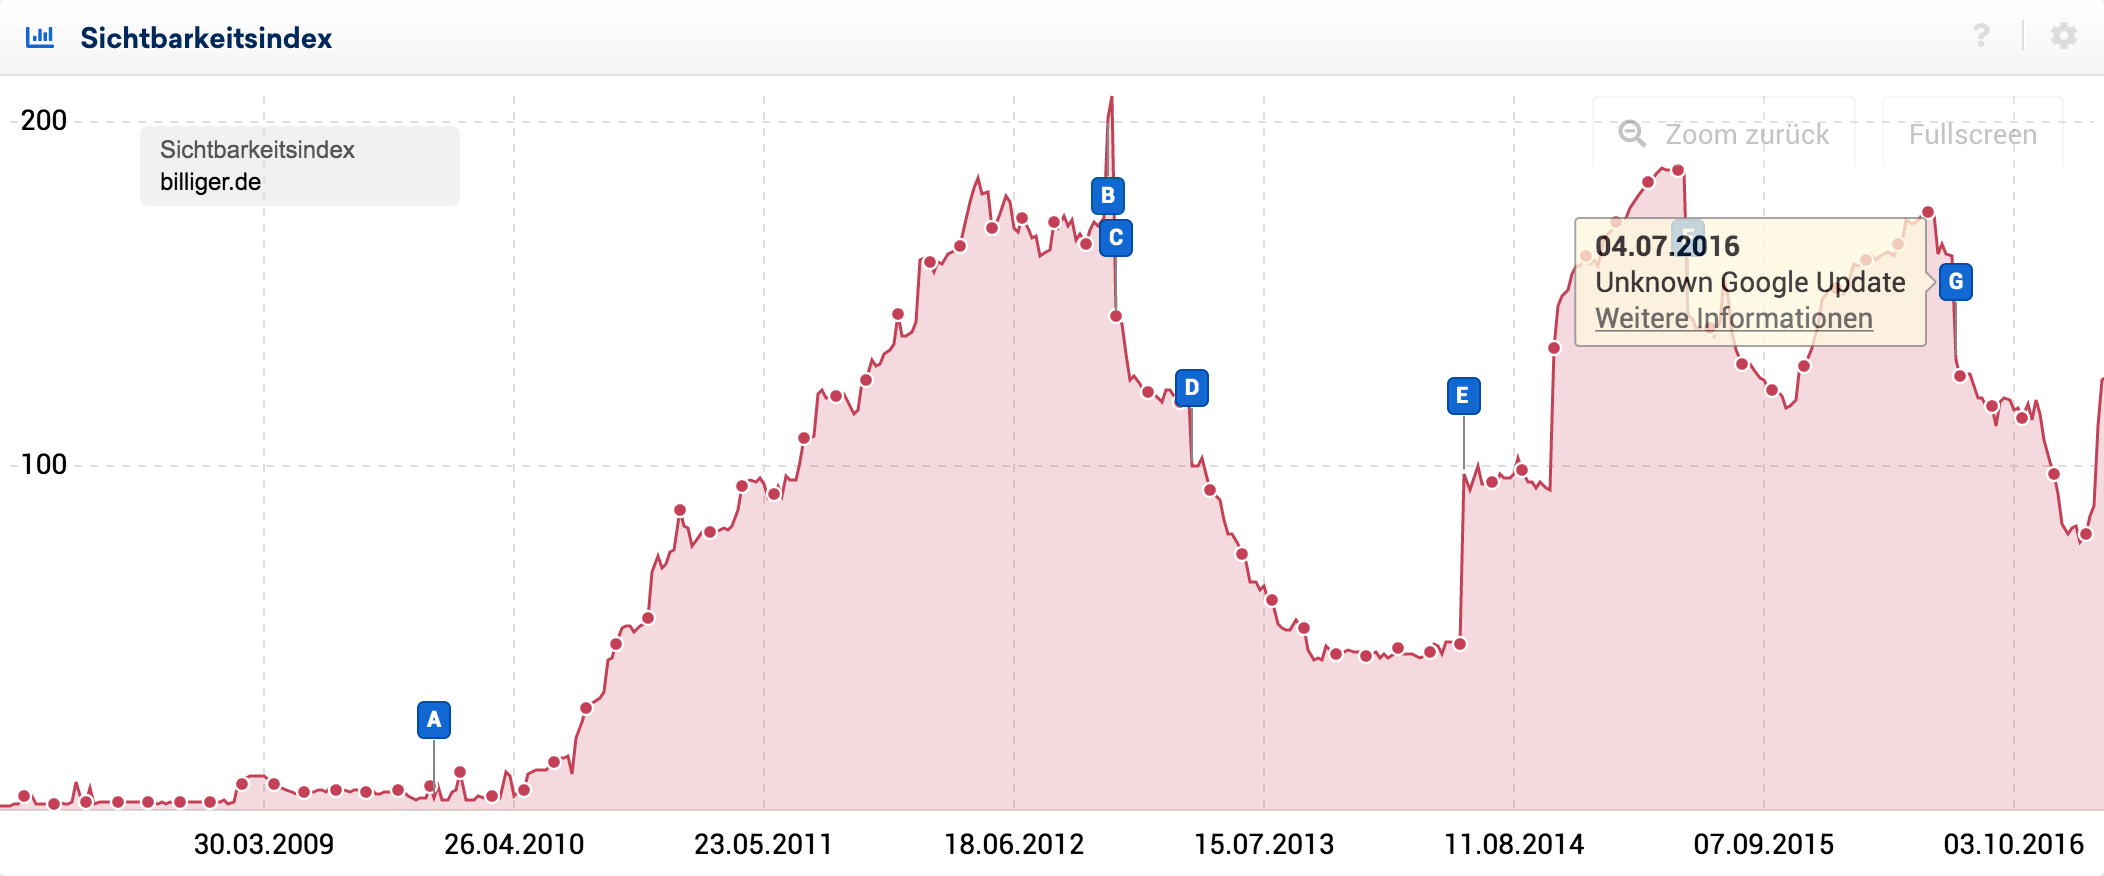 Die Sichtbarkeit der Domain billiger.de zeigte eine starke Reaktion auf das Unkown Google Update im Sommer 2016.